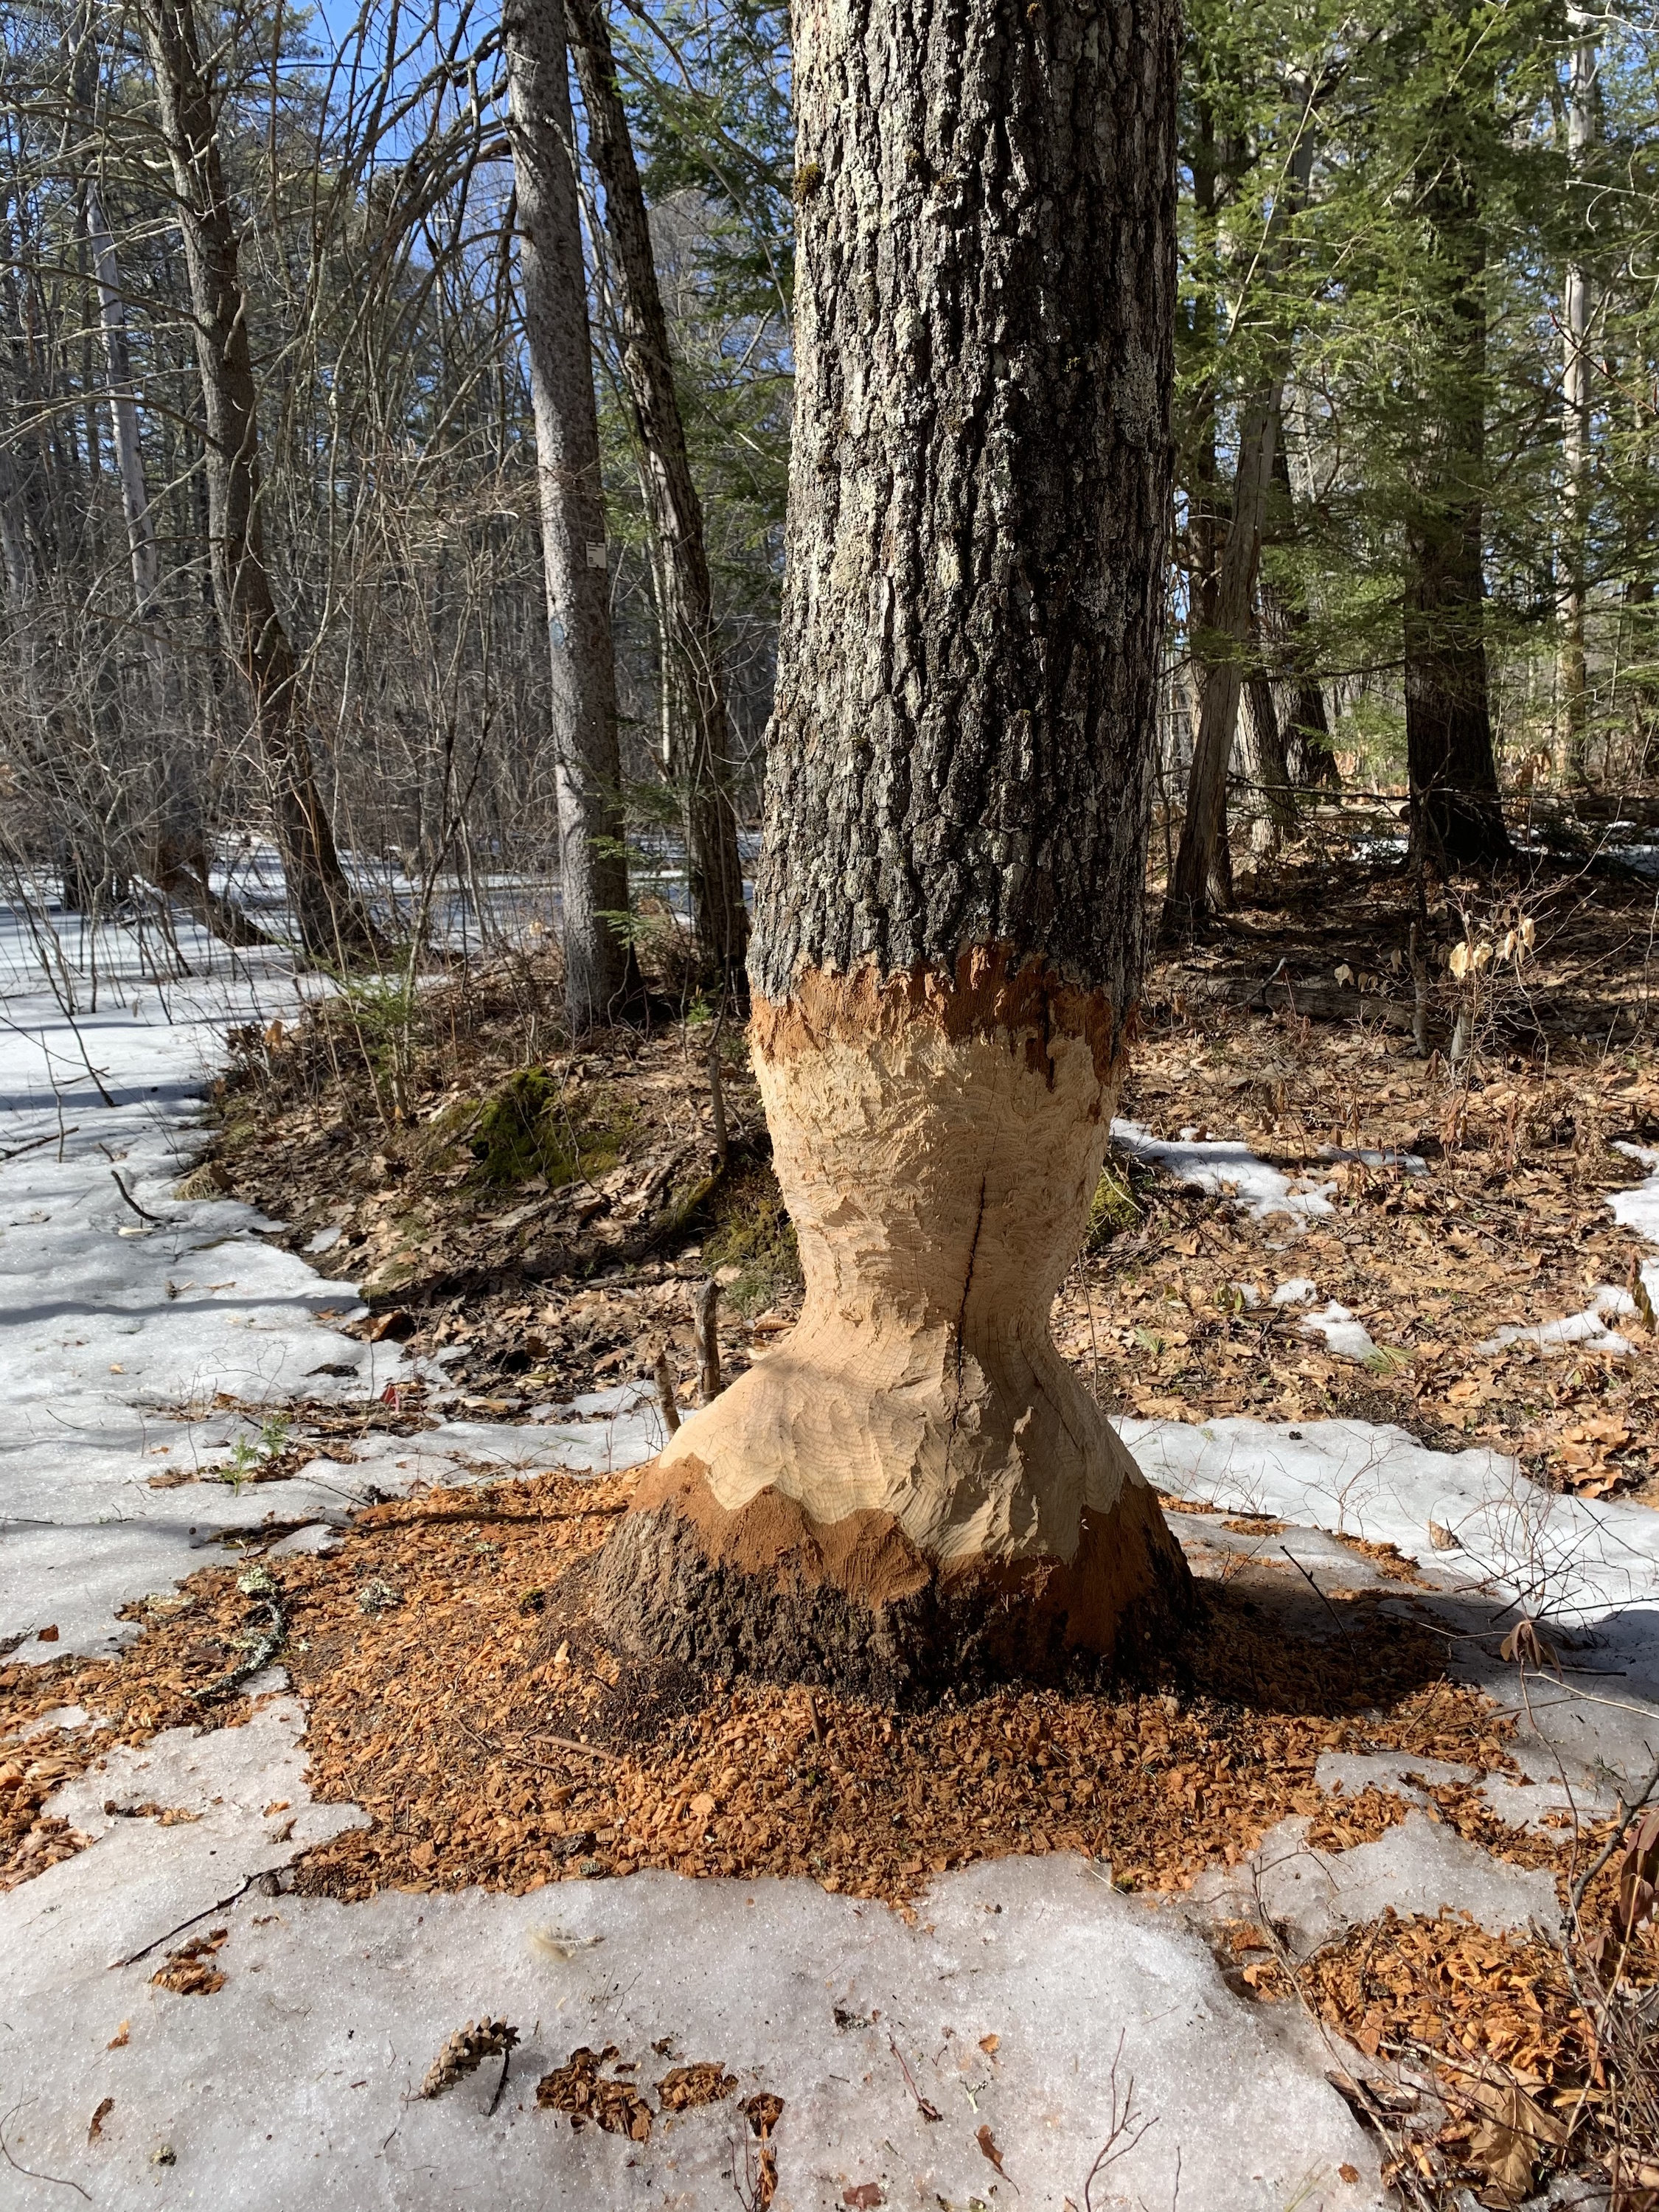 Beaver tree chewed at base